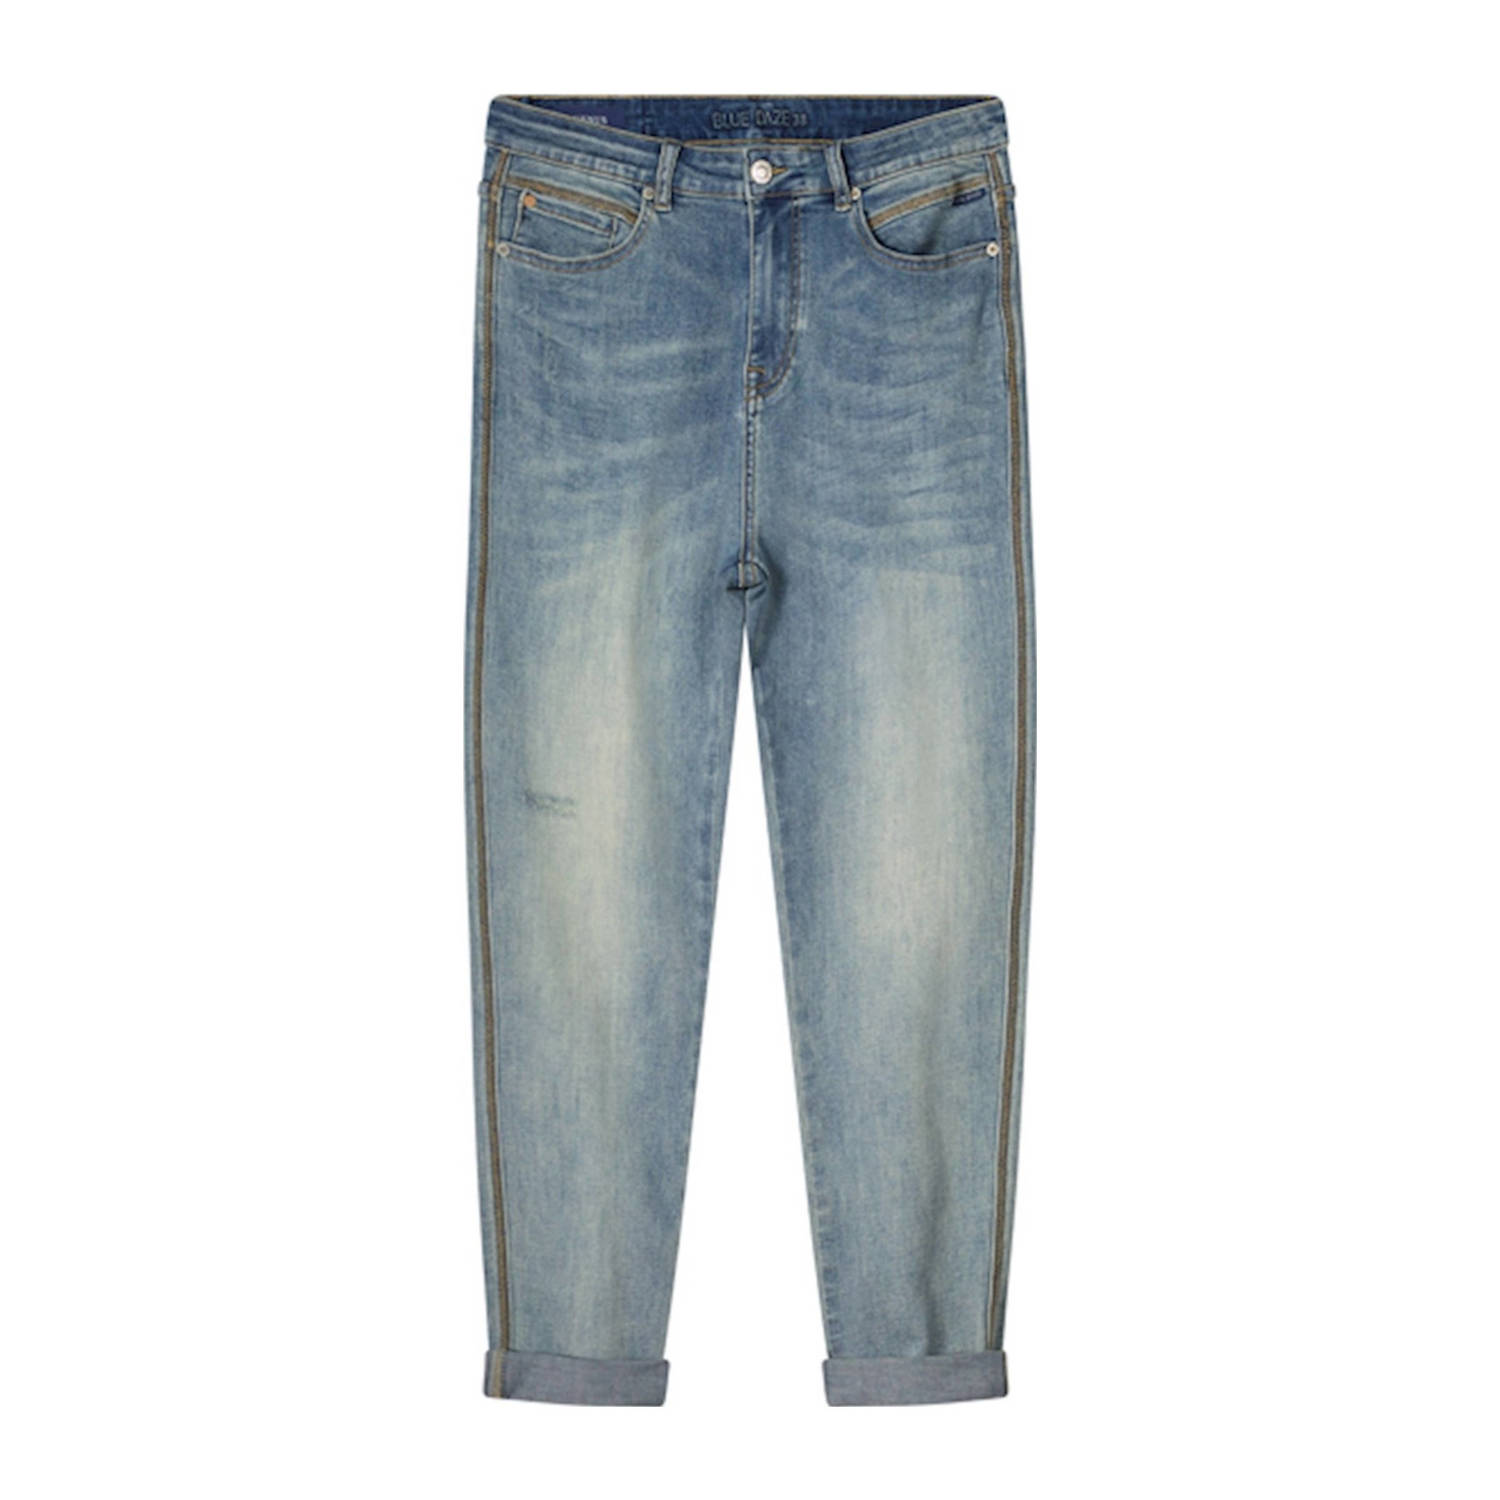 Summum tapered jeans medium blue denim